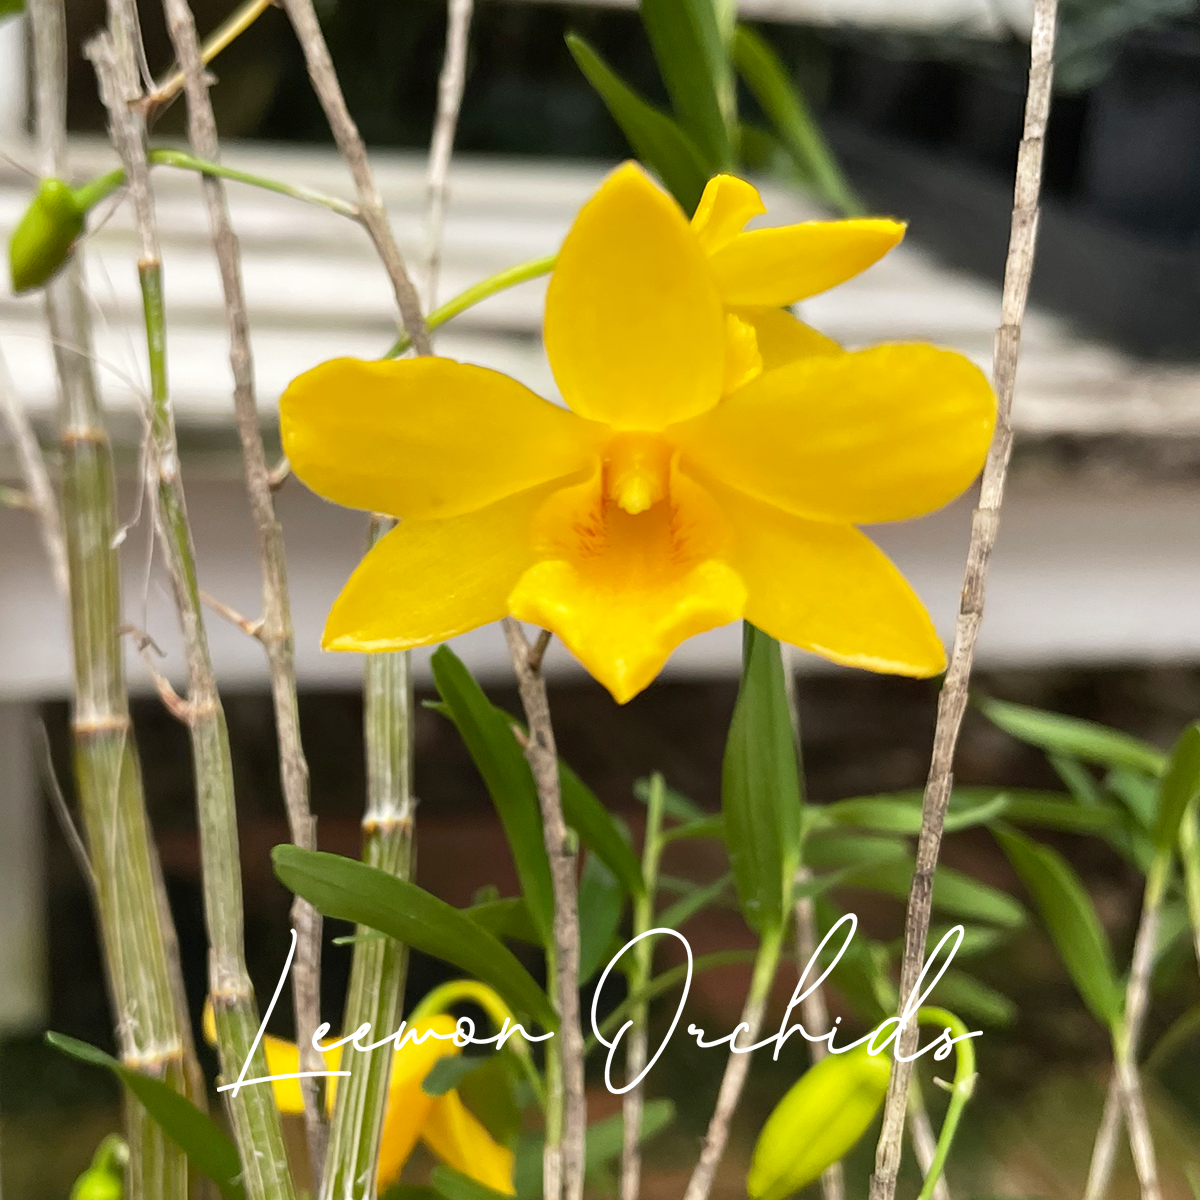 덴드로비움 헨코키아이 Dendrobium hancockii : 꽃대있음 (온라인 한정재고 : 5)